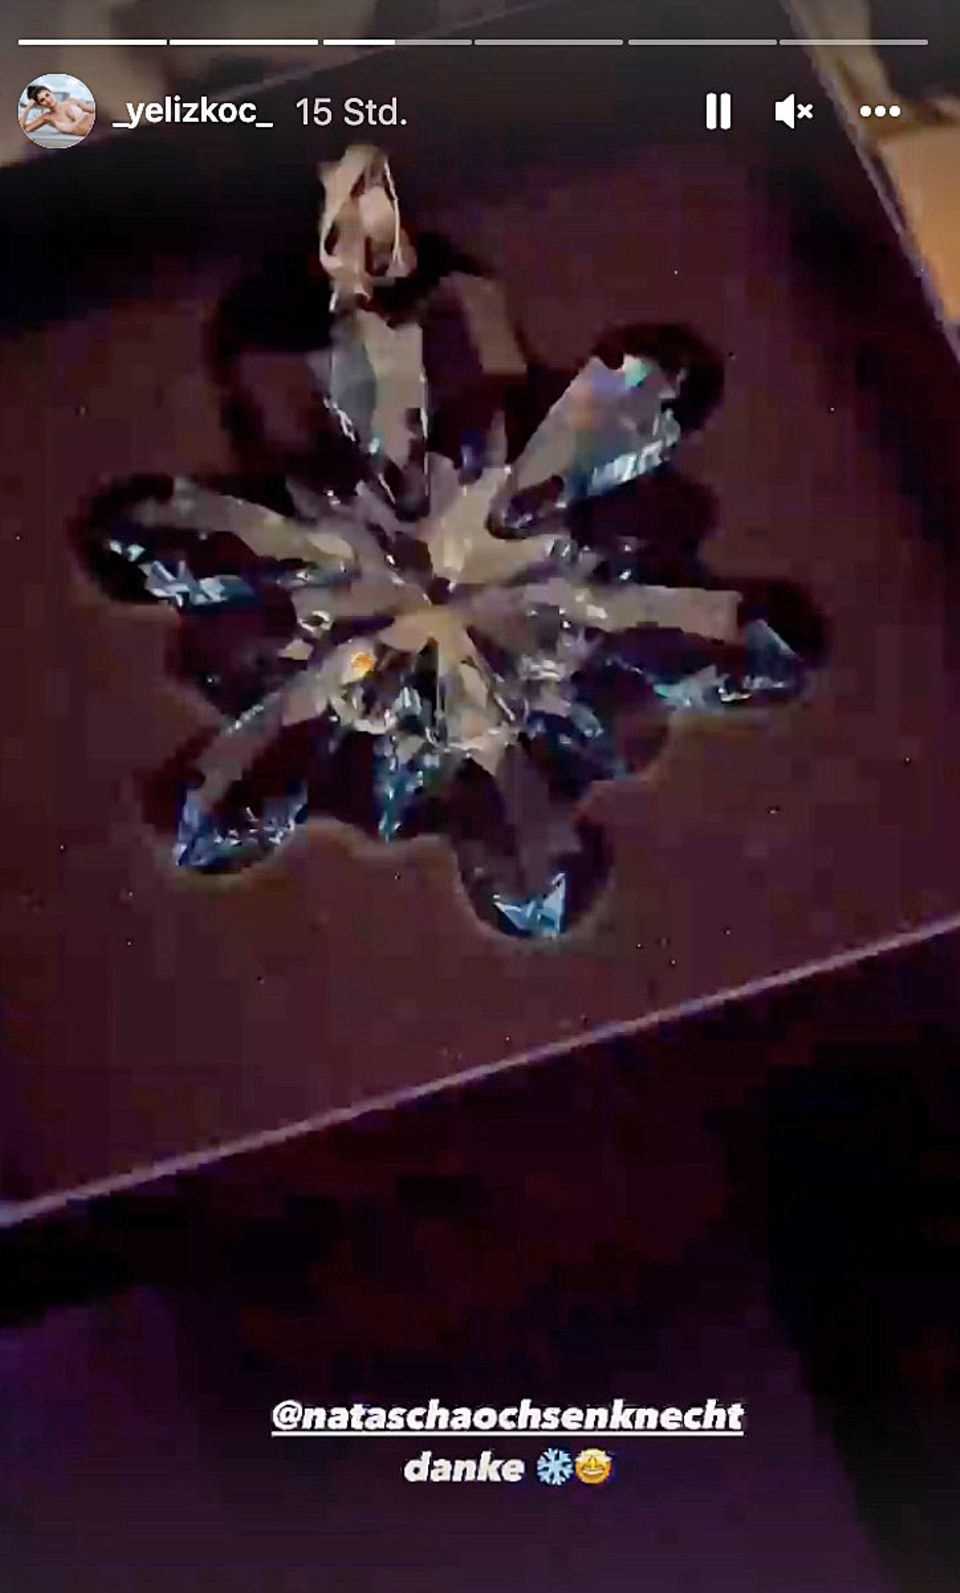 Natascha Ochsenknecht gave a blue snowflake